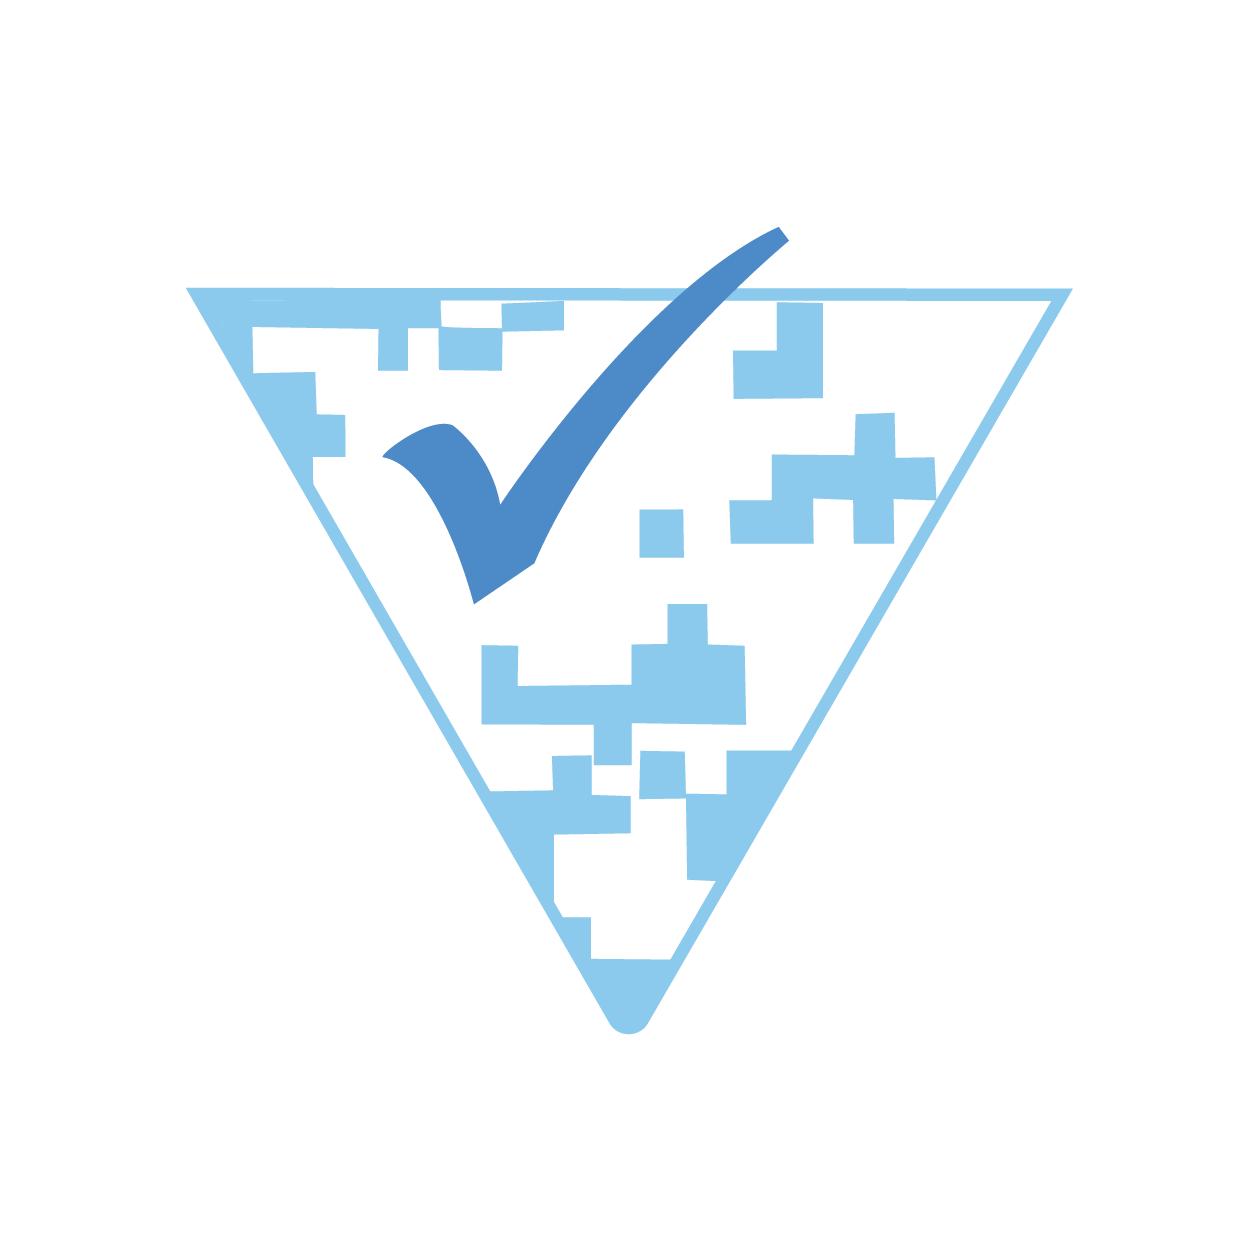 Программное обеспечение для обеспечения соответствия нормативным требованиям - Verification Router Service Логотип rVRS